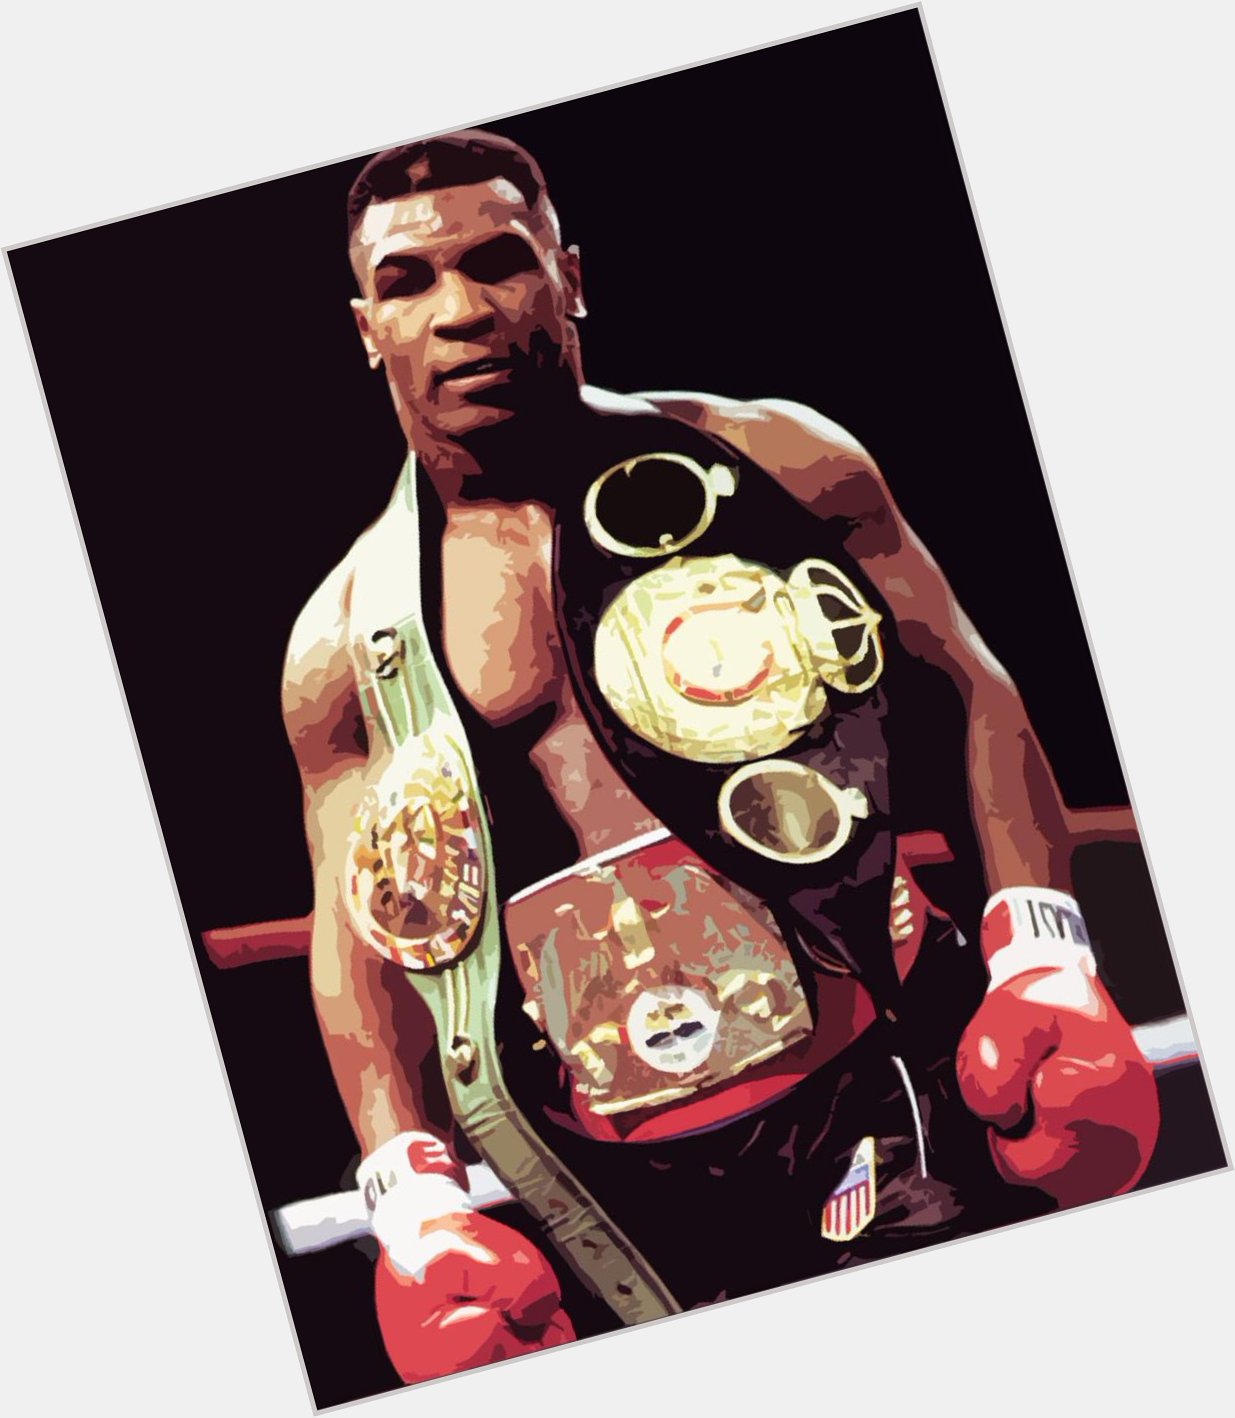 49 lat ko czy dzi jeden z najlepszych bokserów w historii zawodowego boksu, Mike Tyson. Happy birthday, 